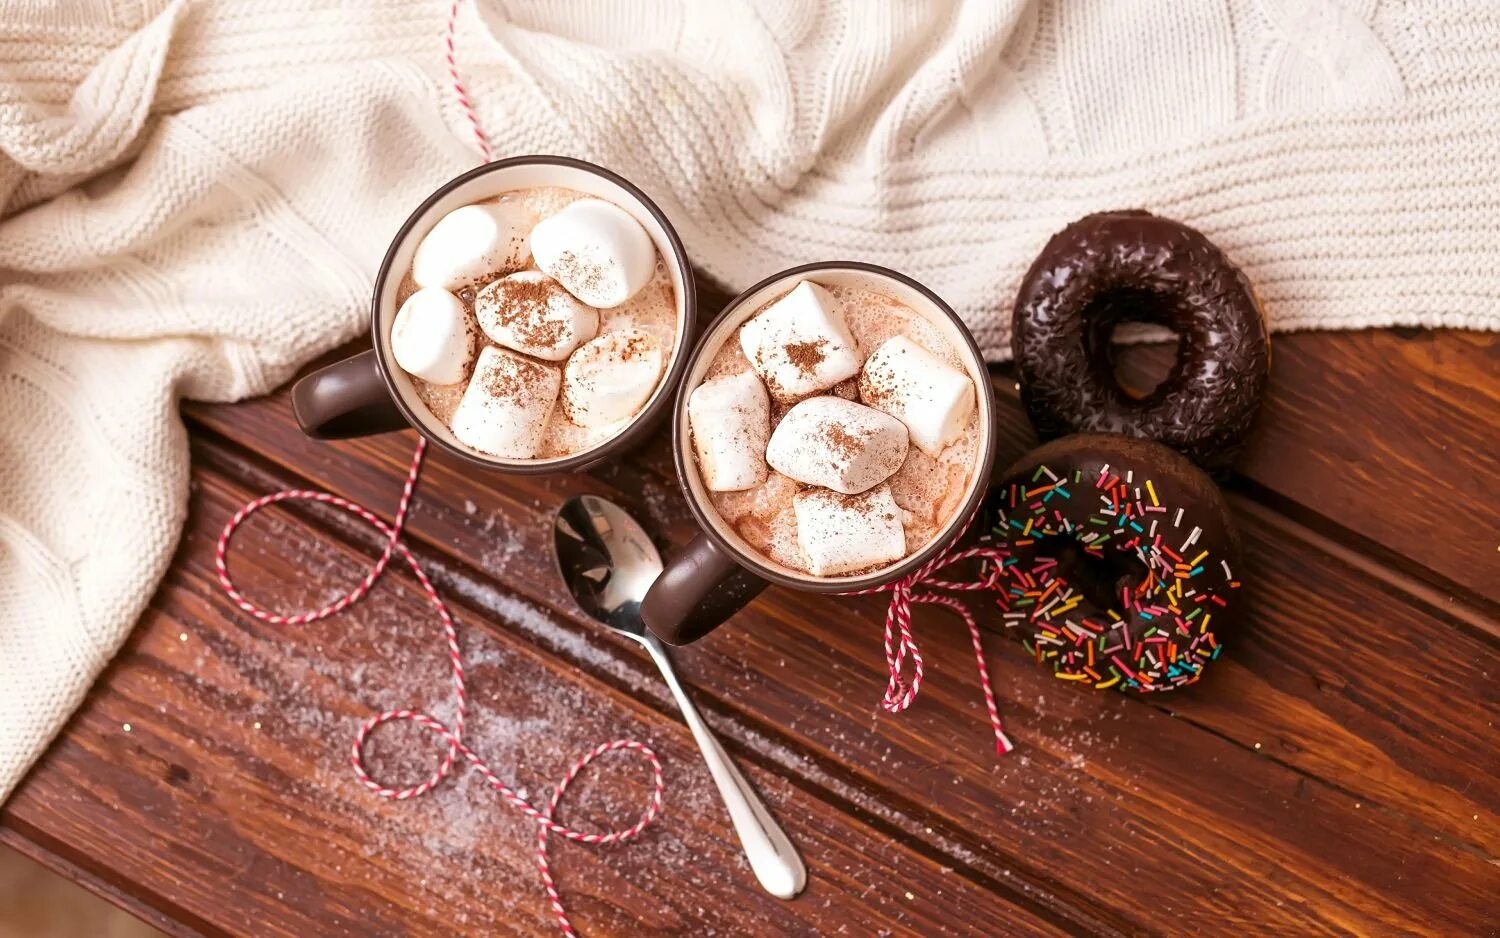 Какао с маршмеллоу Шоколадница. Кофе и сладости. Красивые пирожные и кофе. Кофе с шоколадными конфетами.